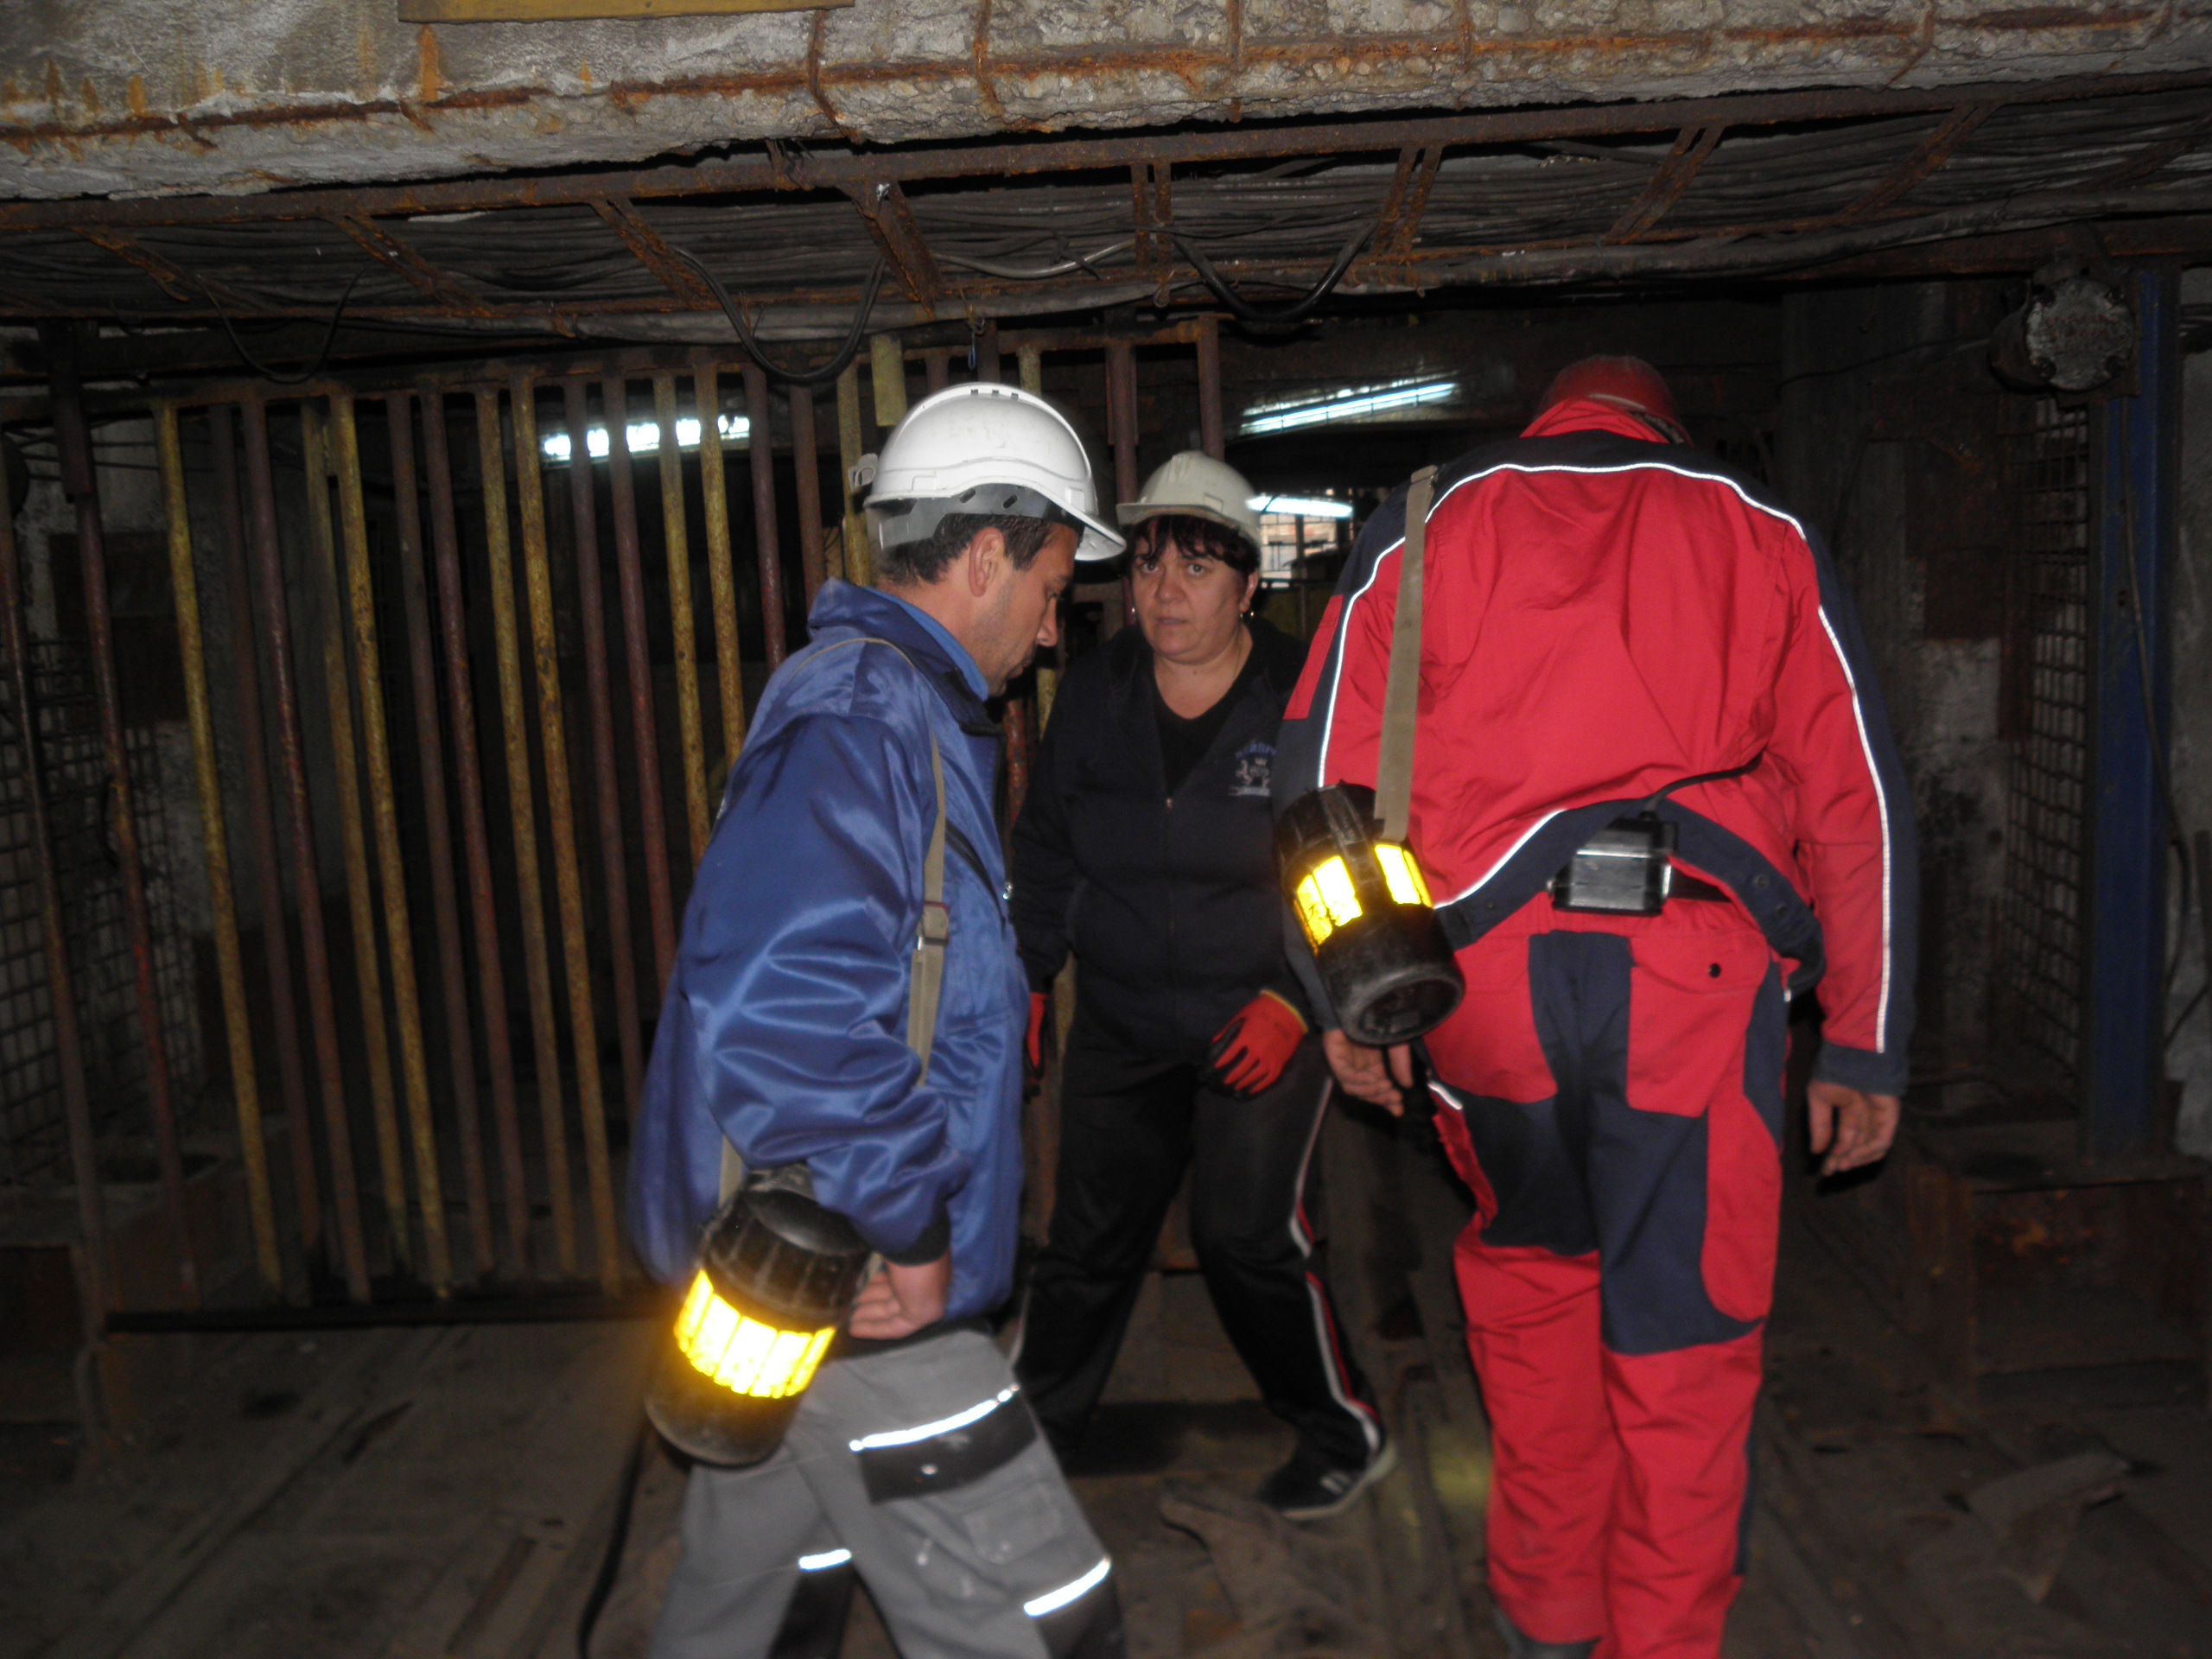 Над 60 часа изкараха близо 140 миньори под земята на рудник "Бабино” тази седмица. Техни колеги ги подкрепяха над земята и щурмуваха ръководството на мините.